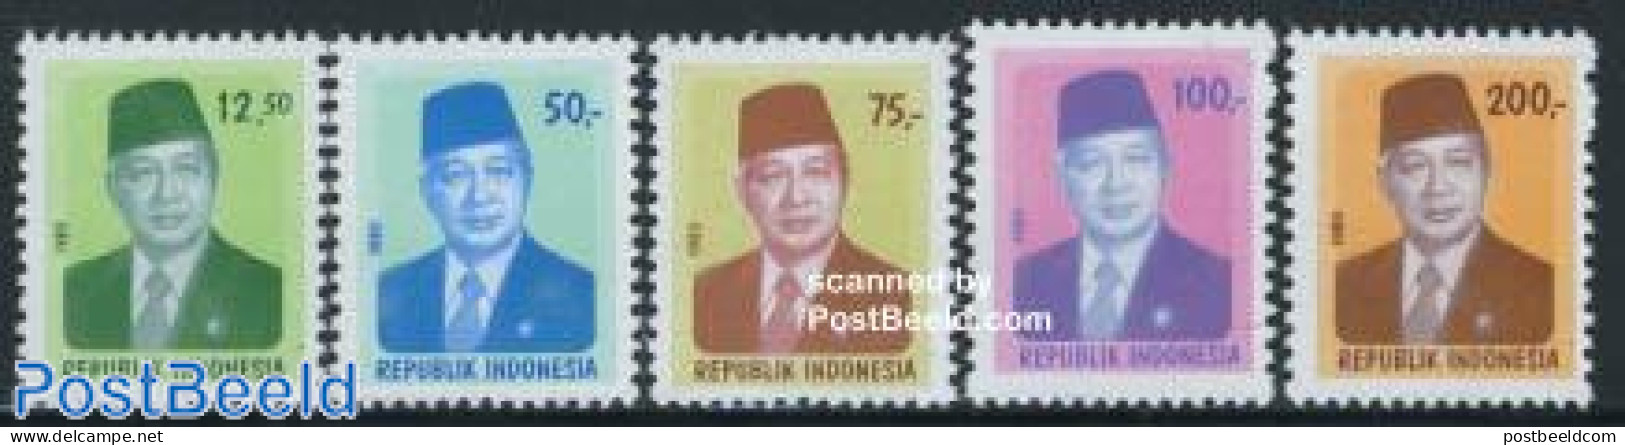 Indonesia 1980 Definitives 5v, Mint NH - Indonesië